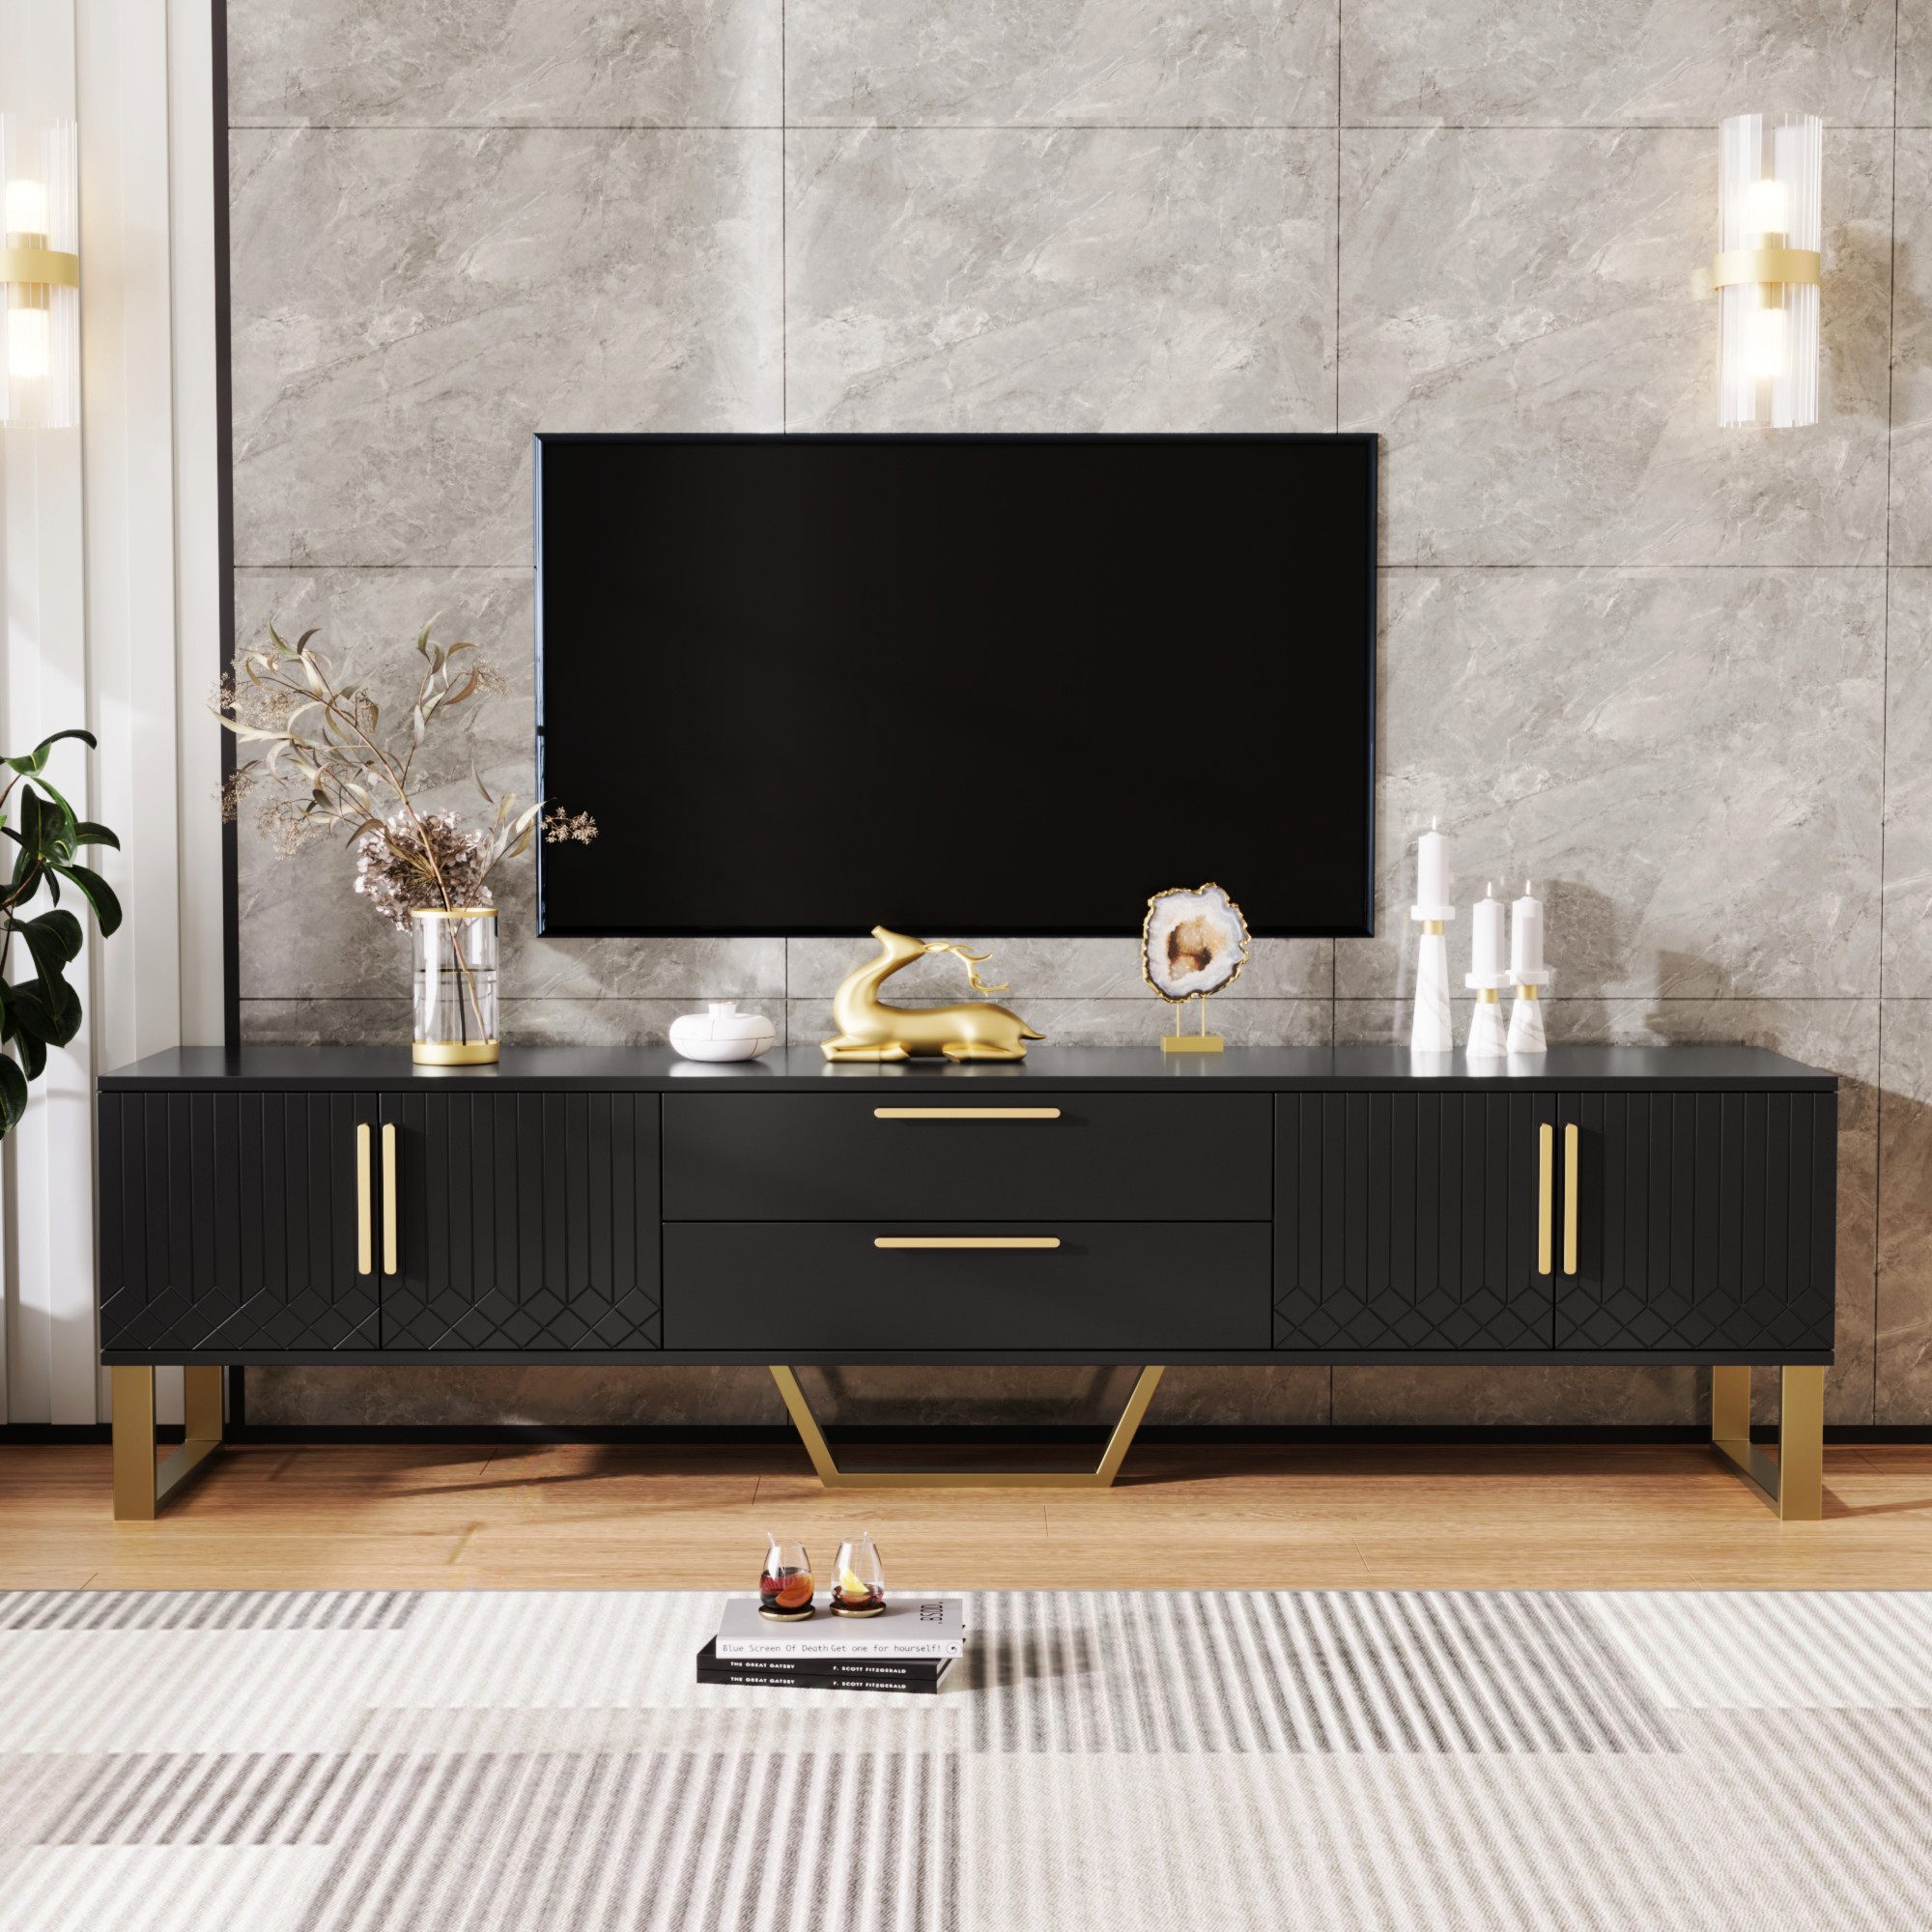 REDOM TV-Schrank Hochglänzender TV Schrank (Hochglänzender TV Schrank, goldene Griffe und Füße) Tür mit gravierter Textur, Aufbewahrungslösung für das Wohnzimmer